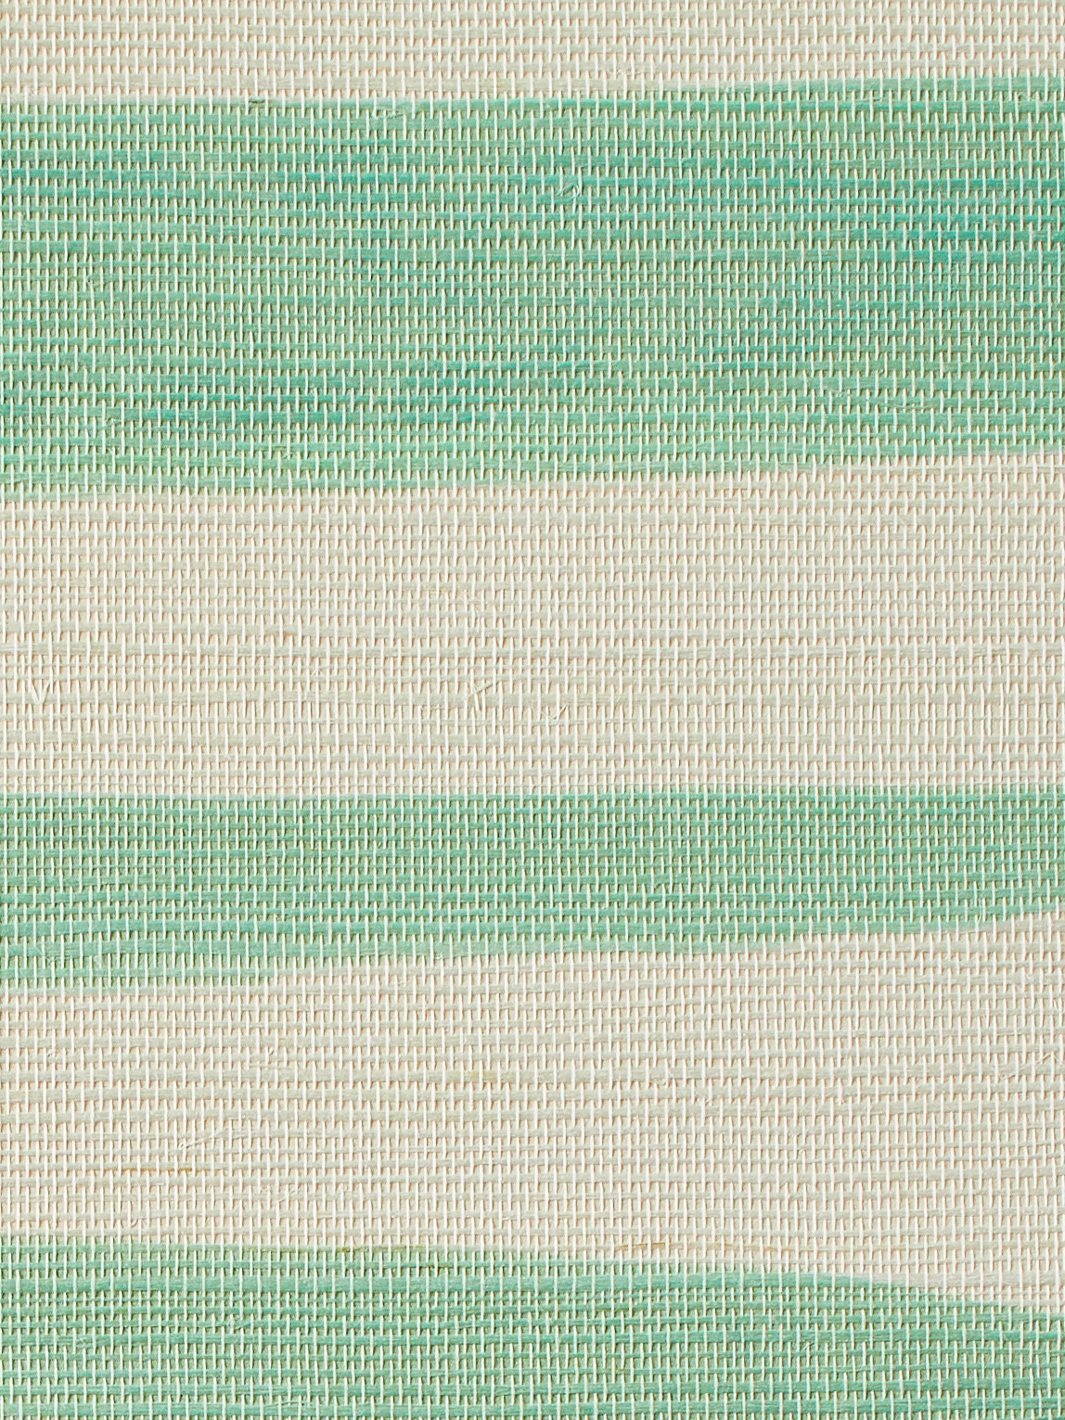 'Watercolor Weave Large' Grasscloth' Wallpaper by Wallshoppe - Green